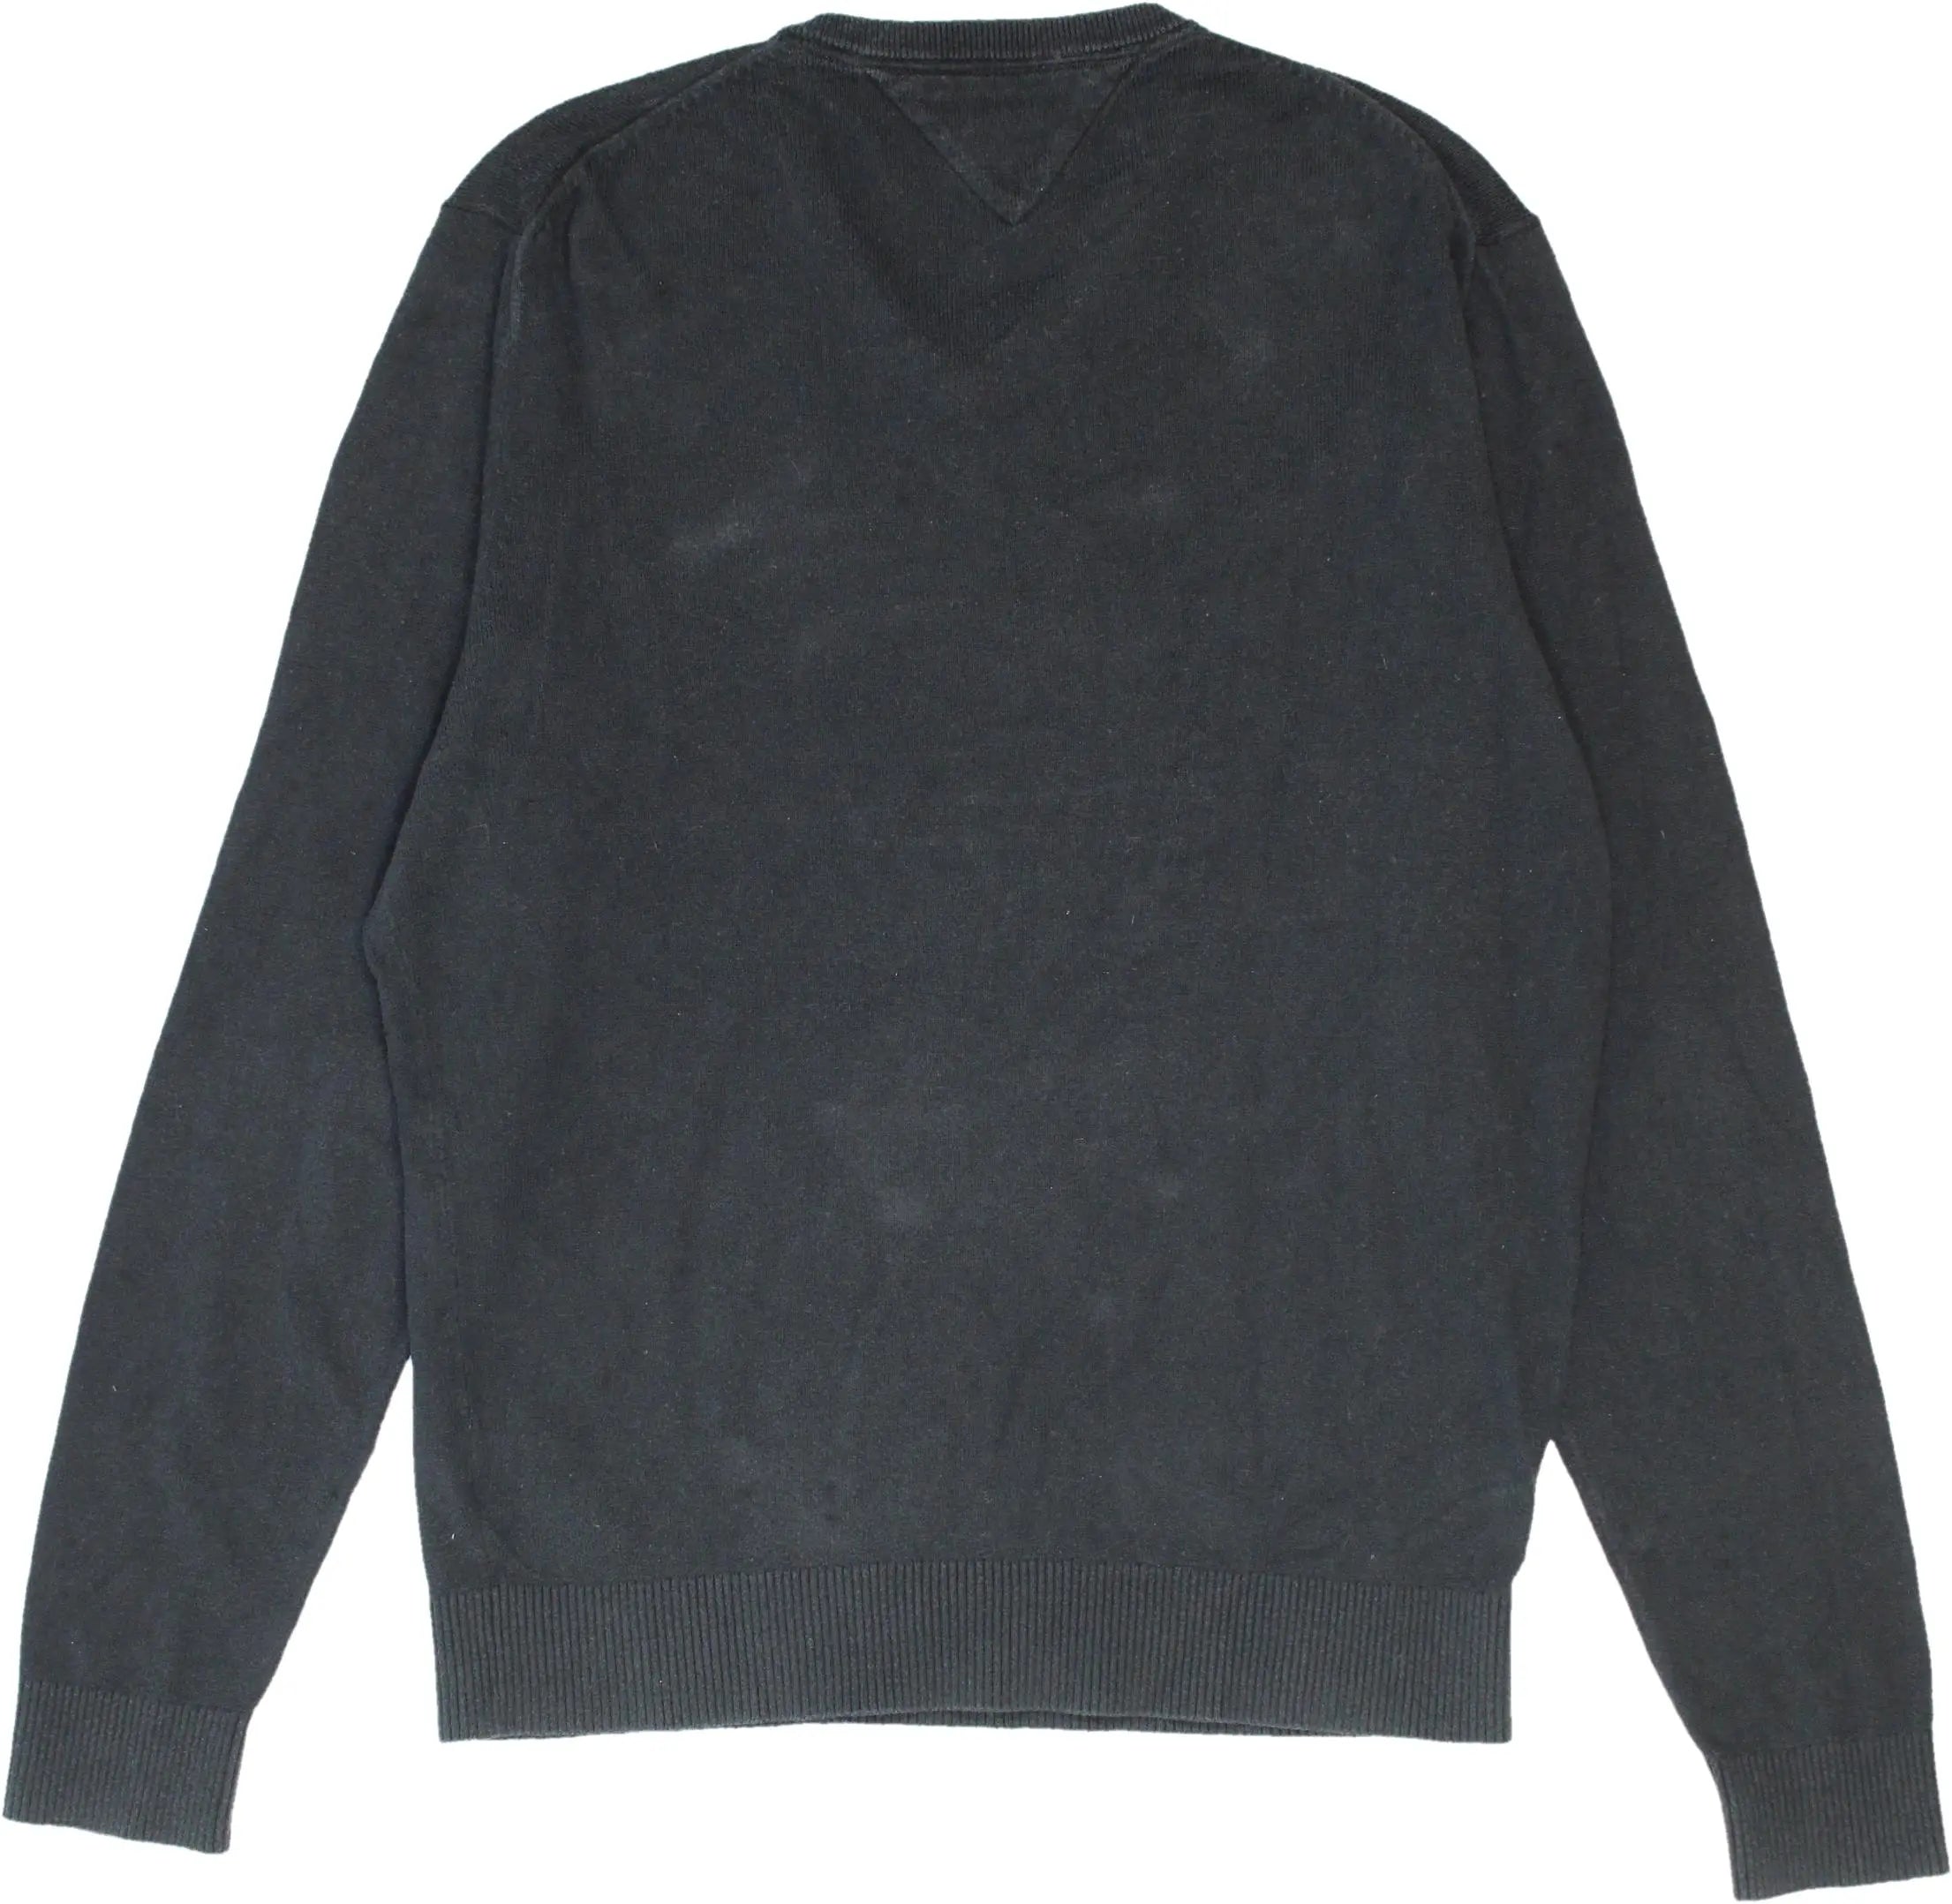 Tommy Hilfiger - Tommy Hilfiger Black V-Neck Sweater- ThriftTale.com - Vintage and second handclothing